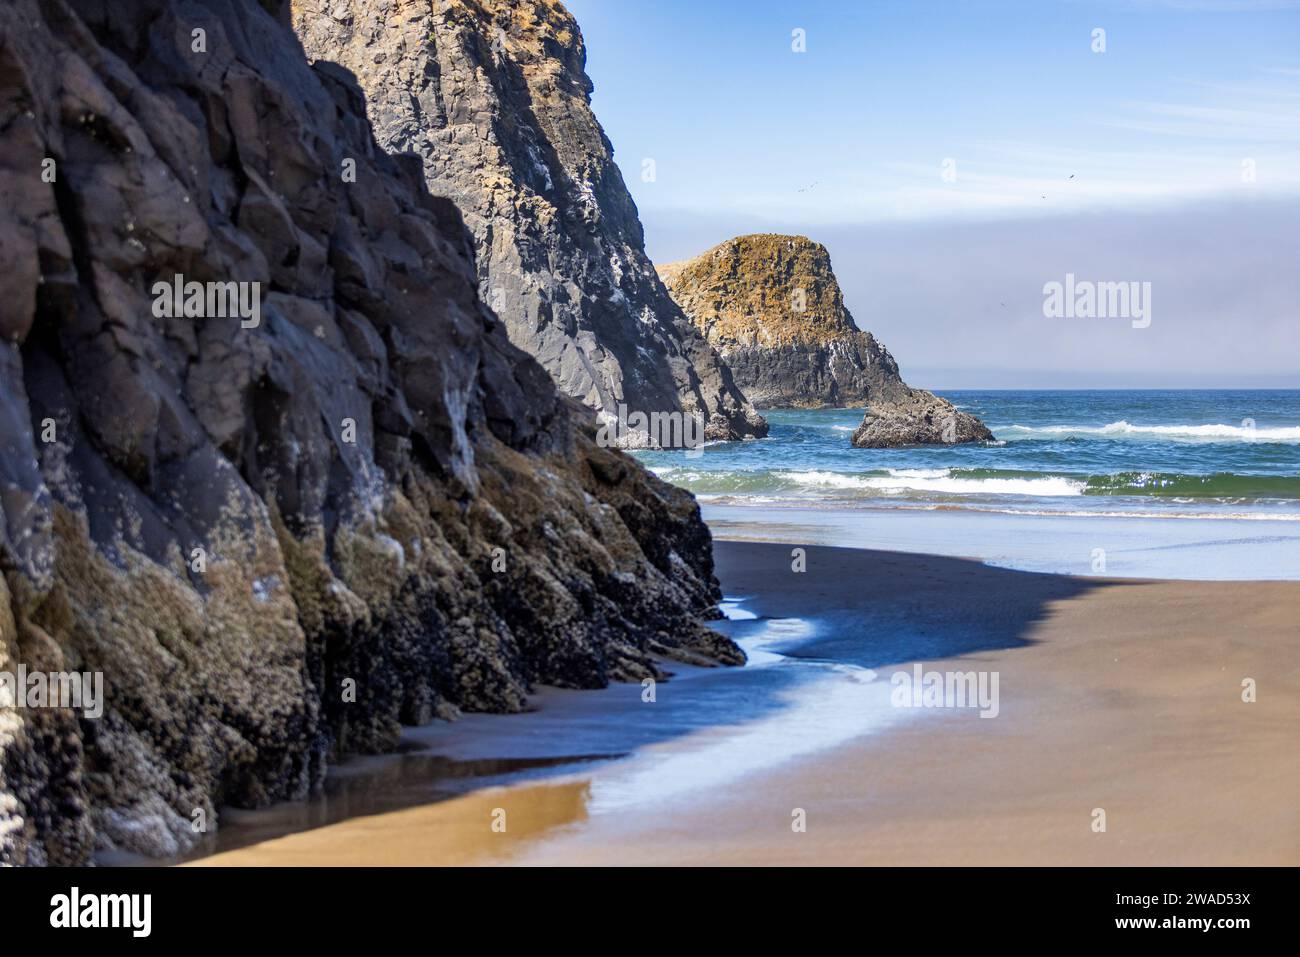 Estados Unidos, Oregón, acantilados rocosos a lo largo del mar en Cannon Beach Foto de stock